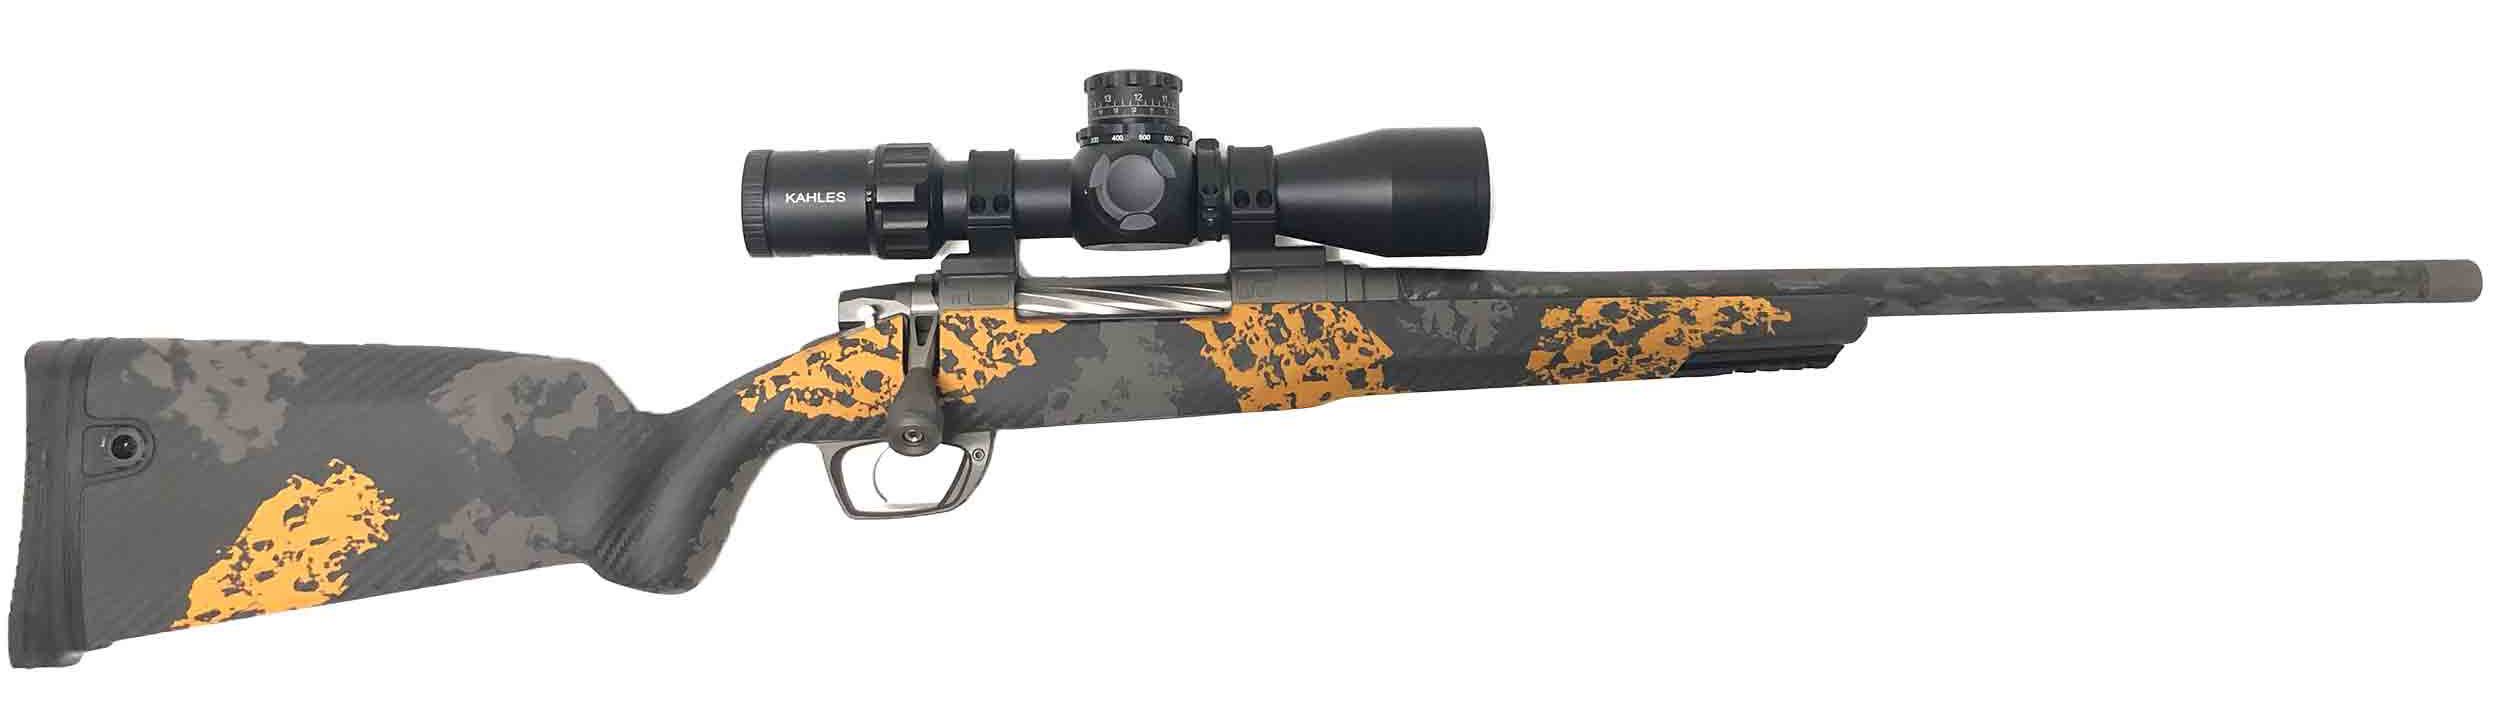 Clymr Rifle.7LRM, GLR TI Action, 20" Tungsten finish, Thread Cap, Carbon Orange, LOP 13.5,|